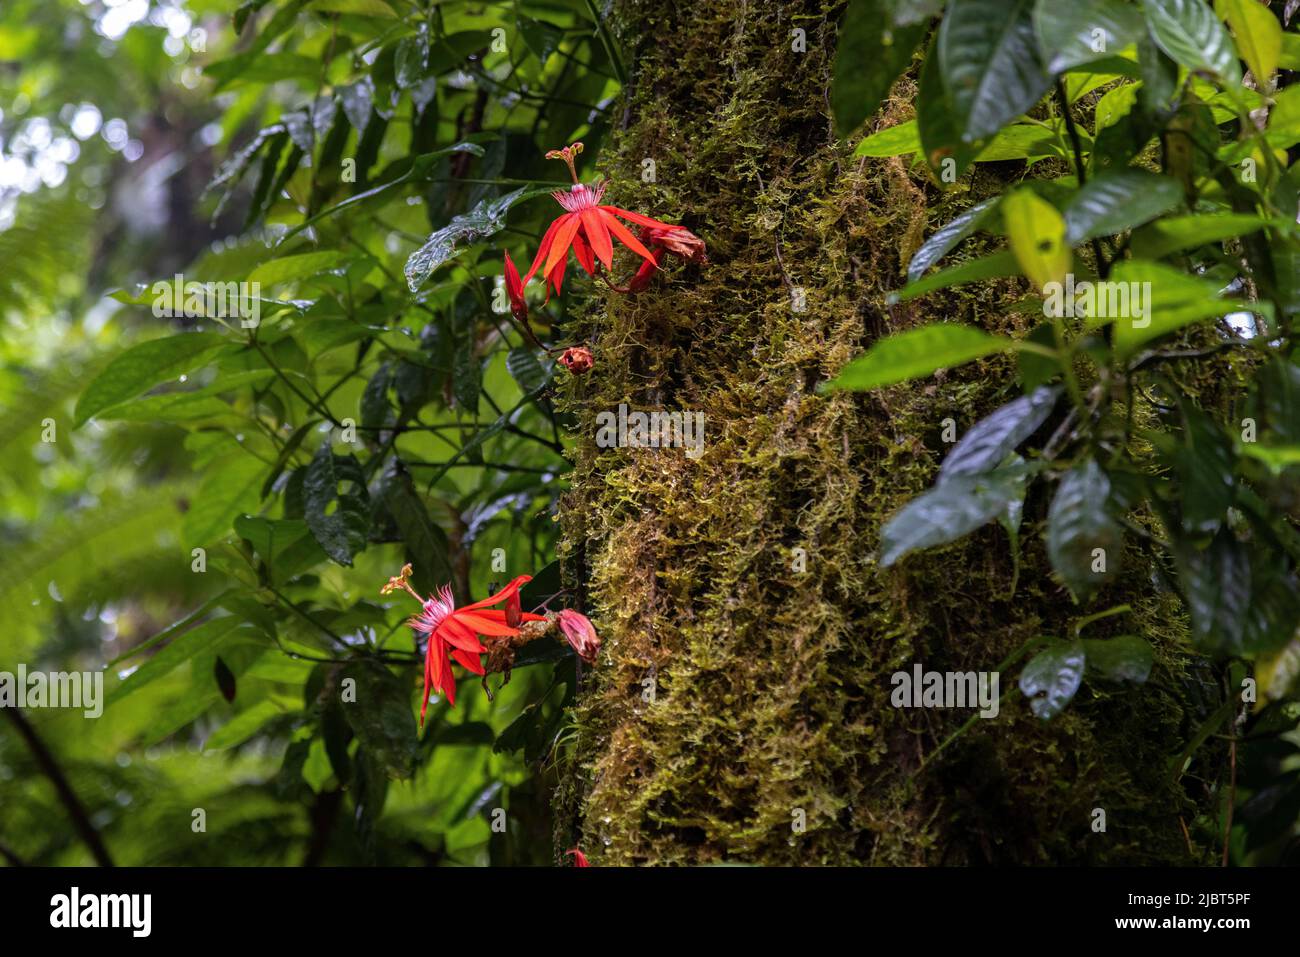 Costa Rica, Alajuela province, Tenorio volcano national park, passion flower (Passiflora coccinea) Stock Photo